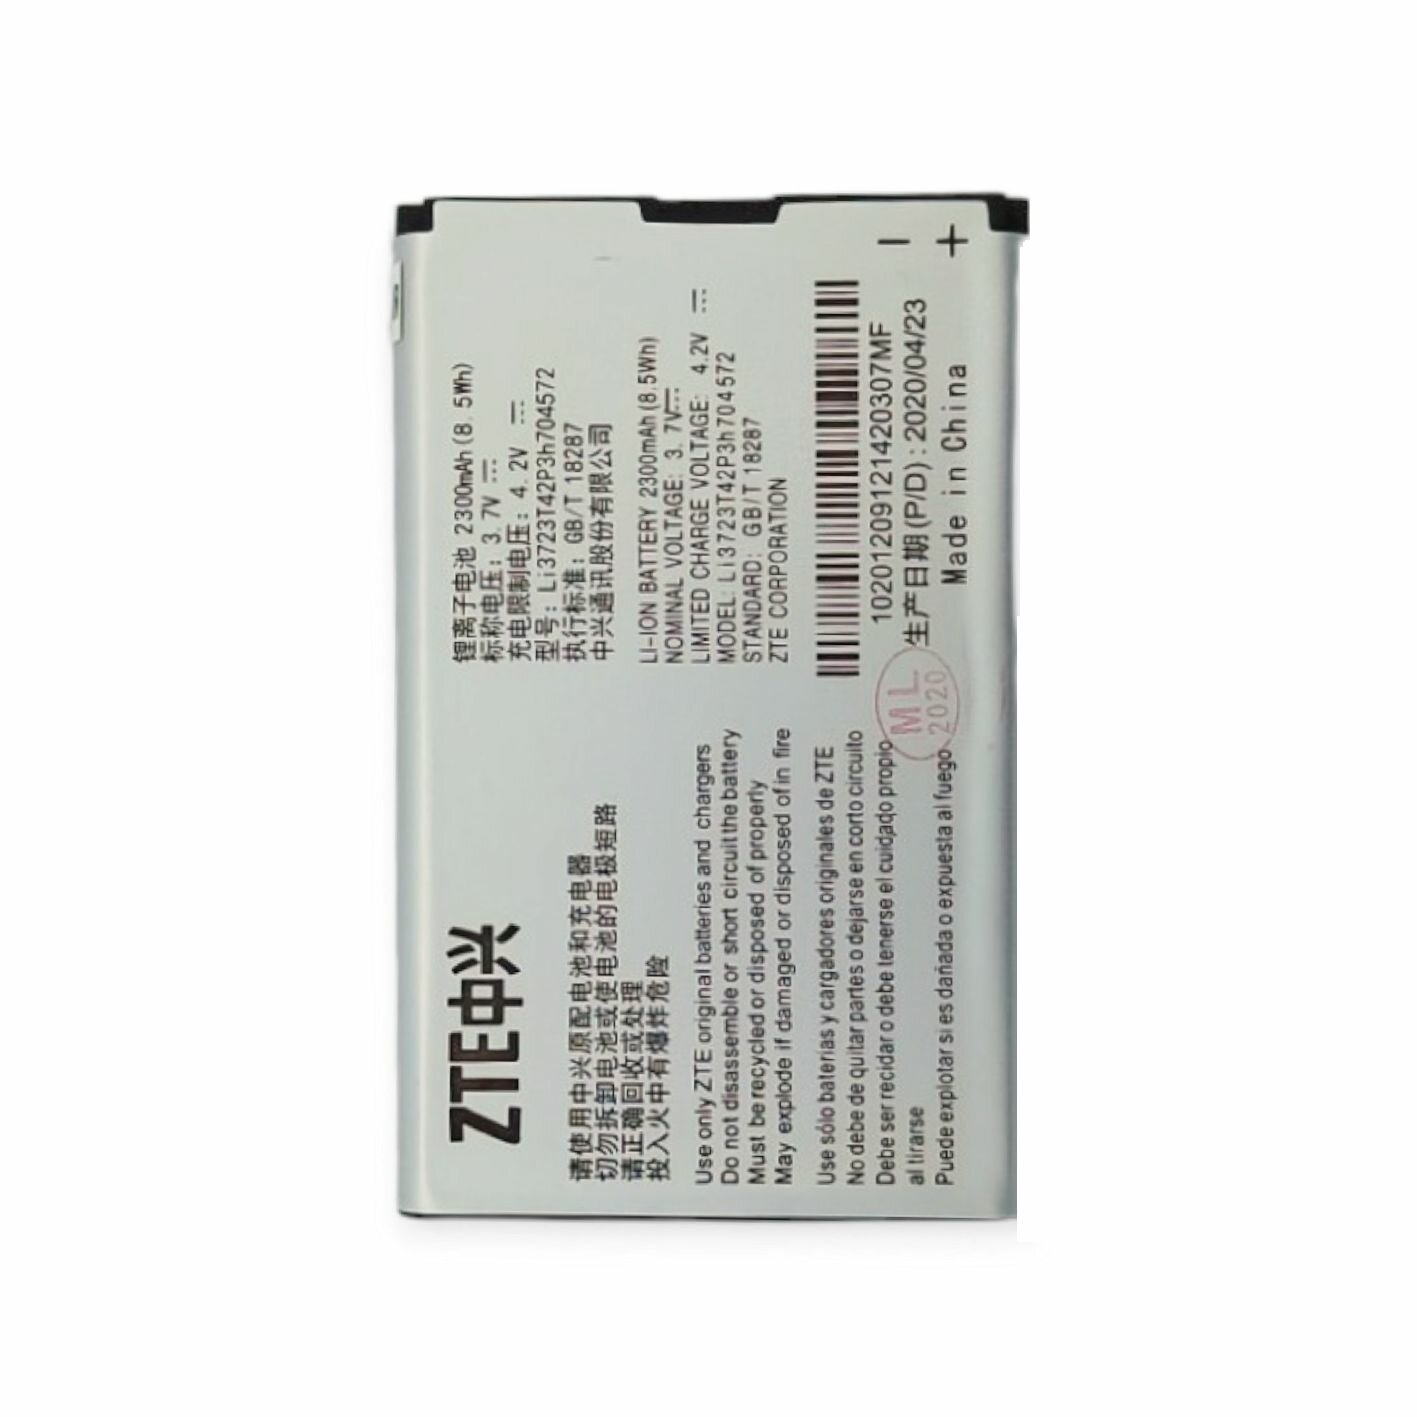 АКБ (аккумулятор) ZTE LI3723T42P3h704572 (для модемов и роутеров Beeline MF90, МТС 831FT, МТС 833FT, ZTE MF91D) 3.7V 2300mA